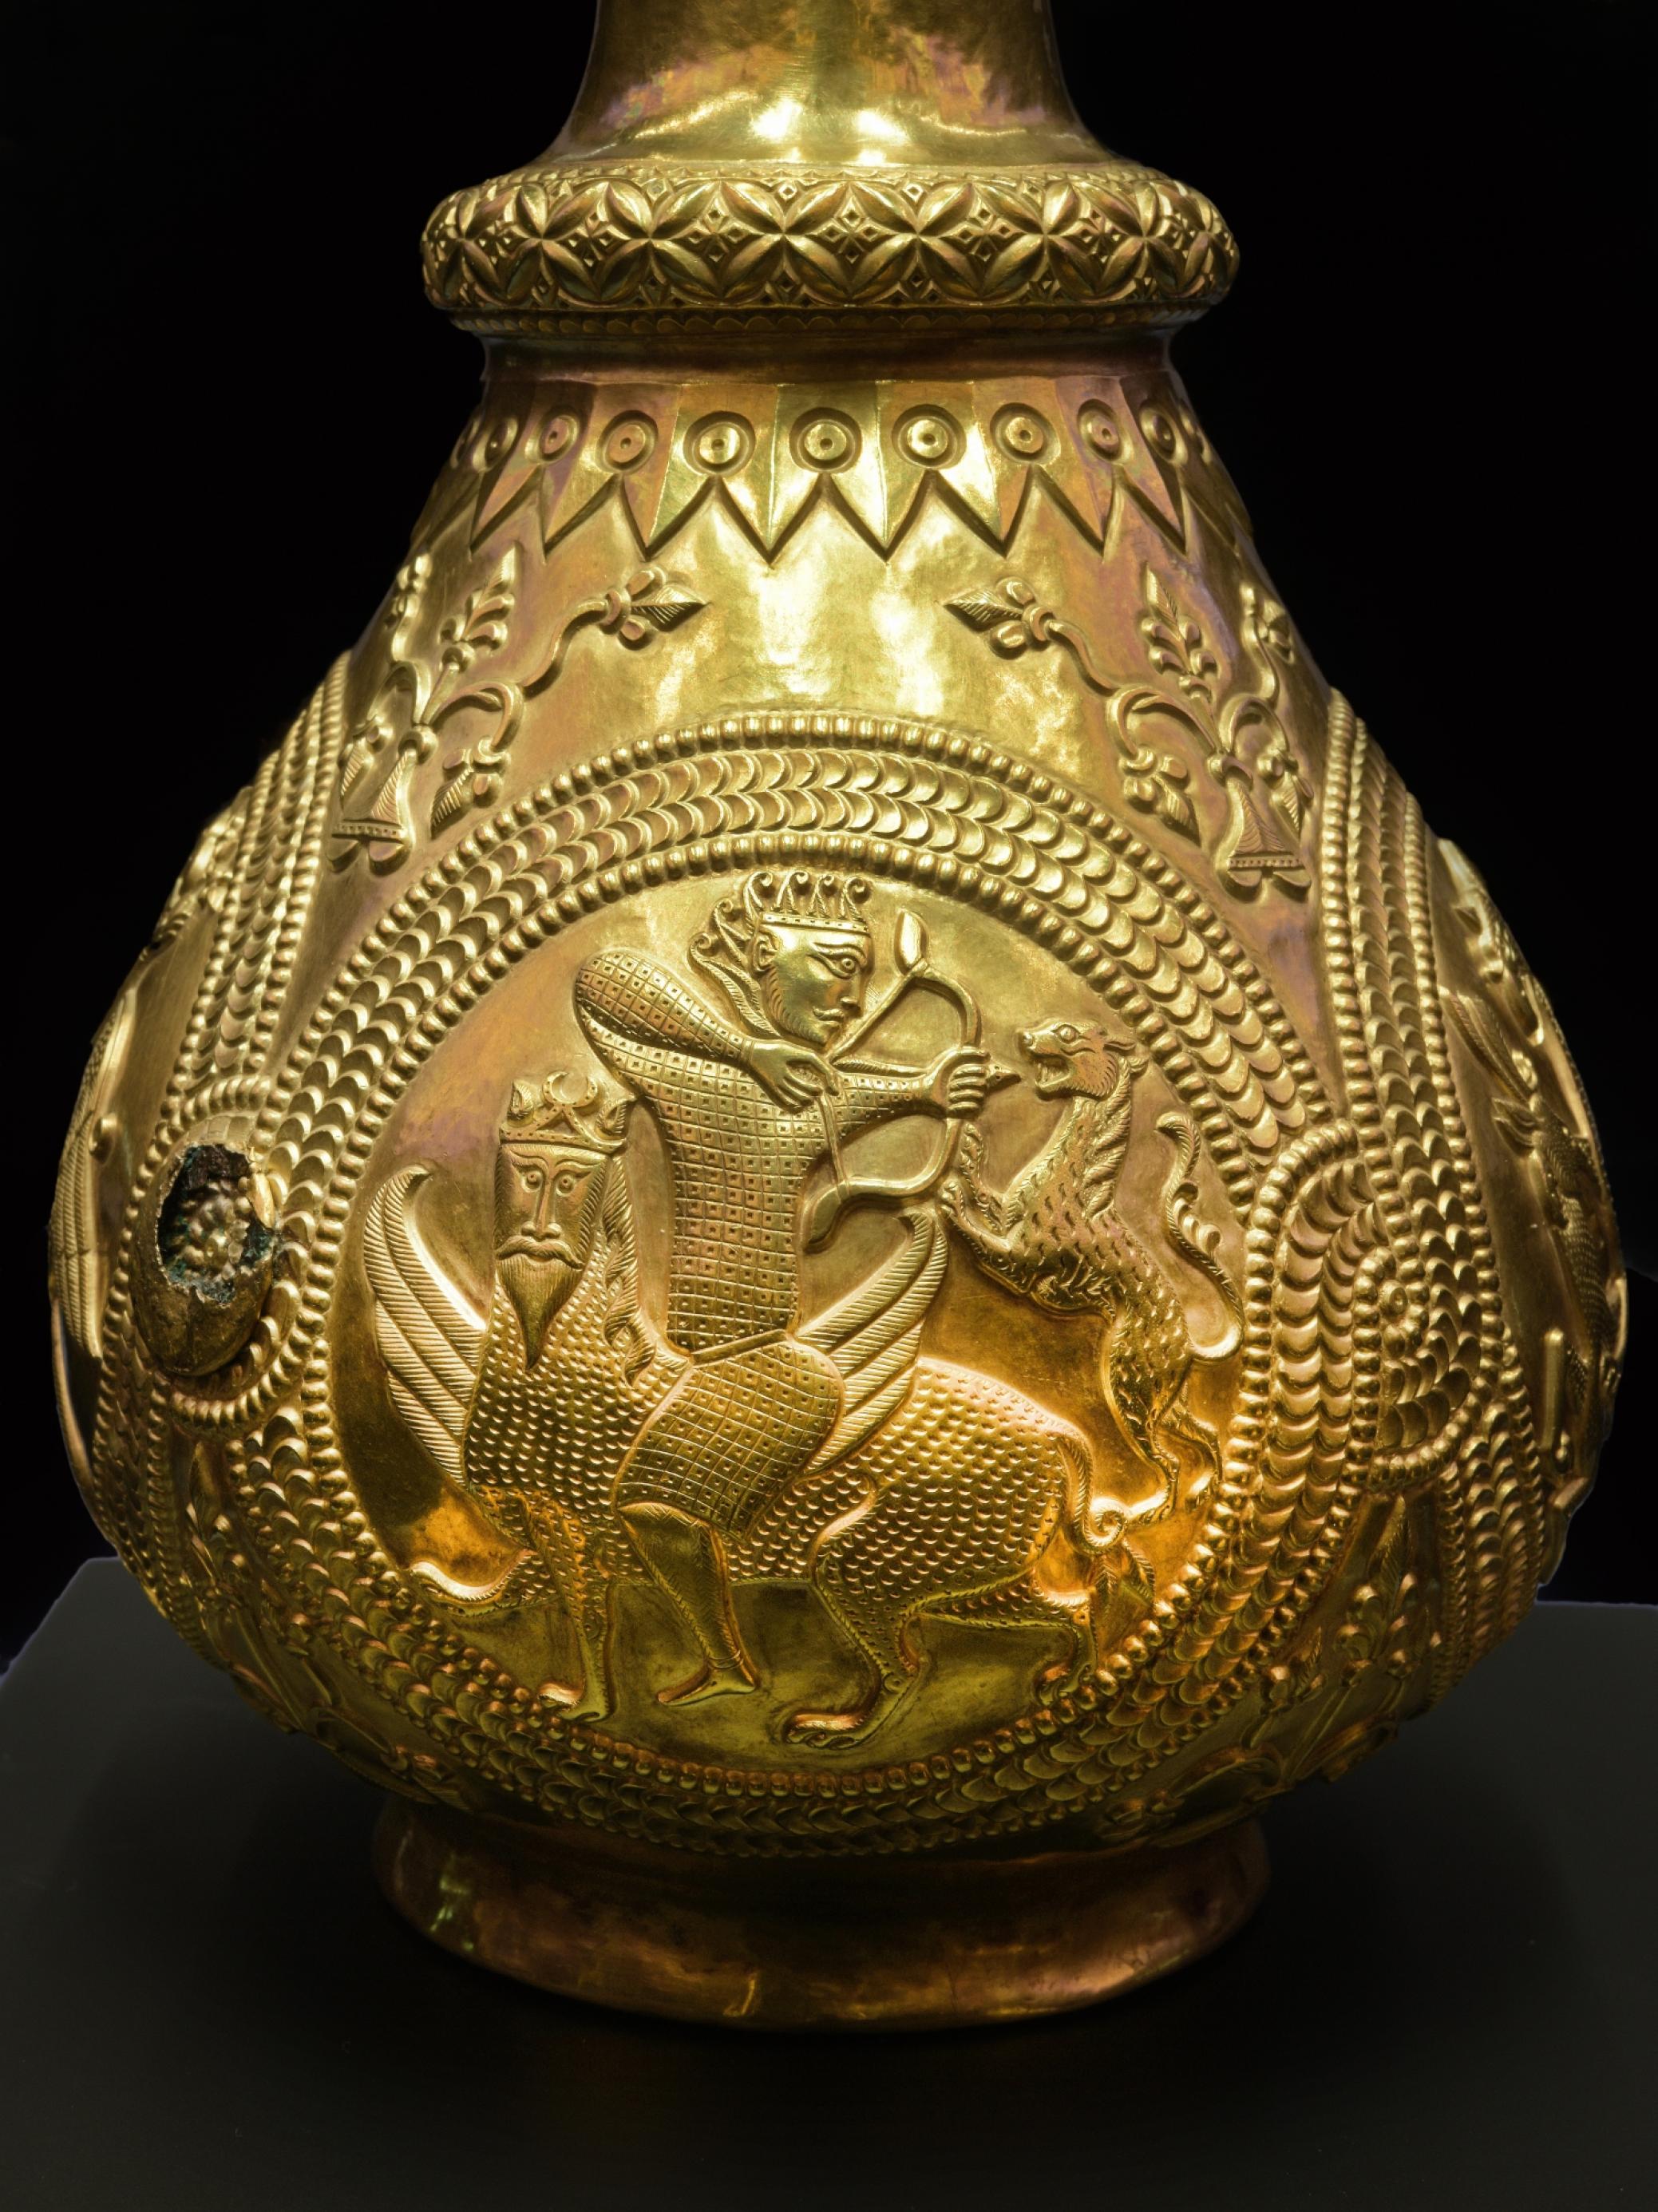 Das Bild zeigt eine goldene Kanne mit einem eingravierten Emblem, auf dem ein Mann ein Fabelwesen reitet und mit Pfeil und Bogen auf eine Raubkatze schießt.